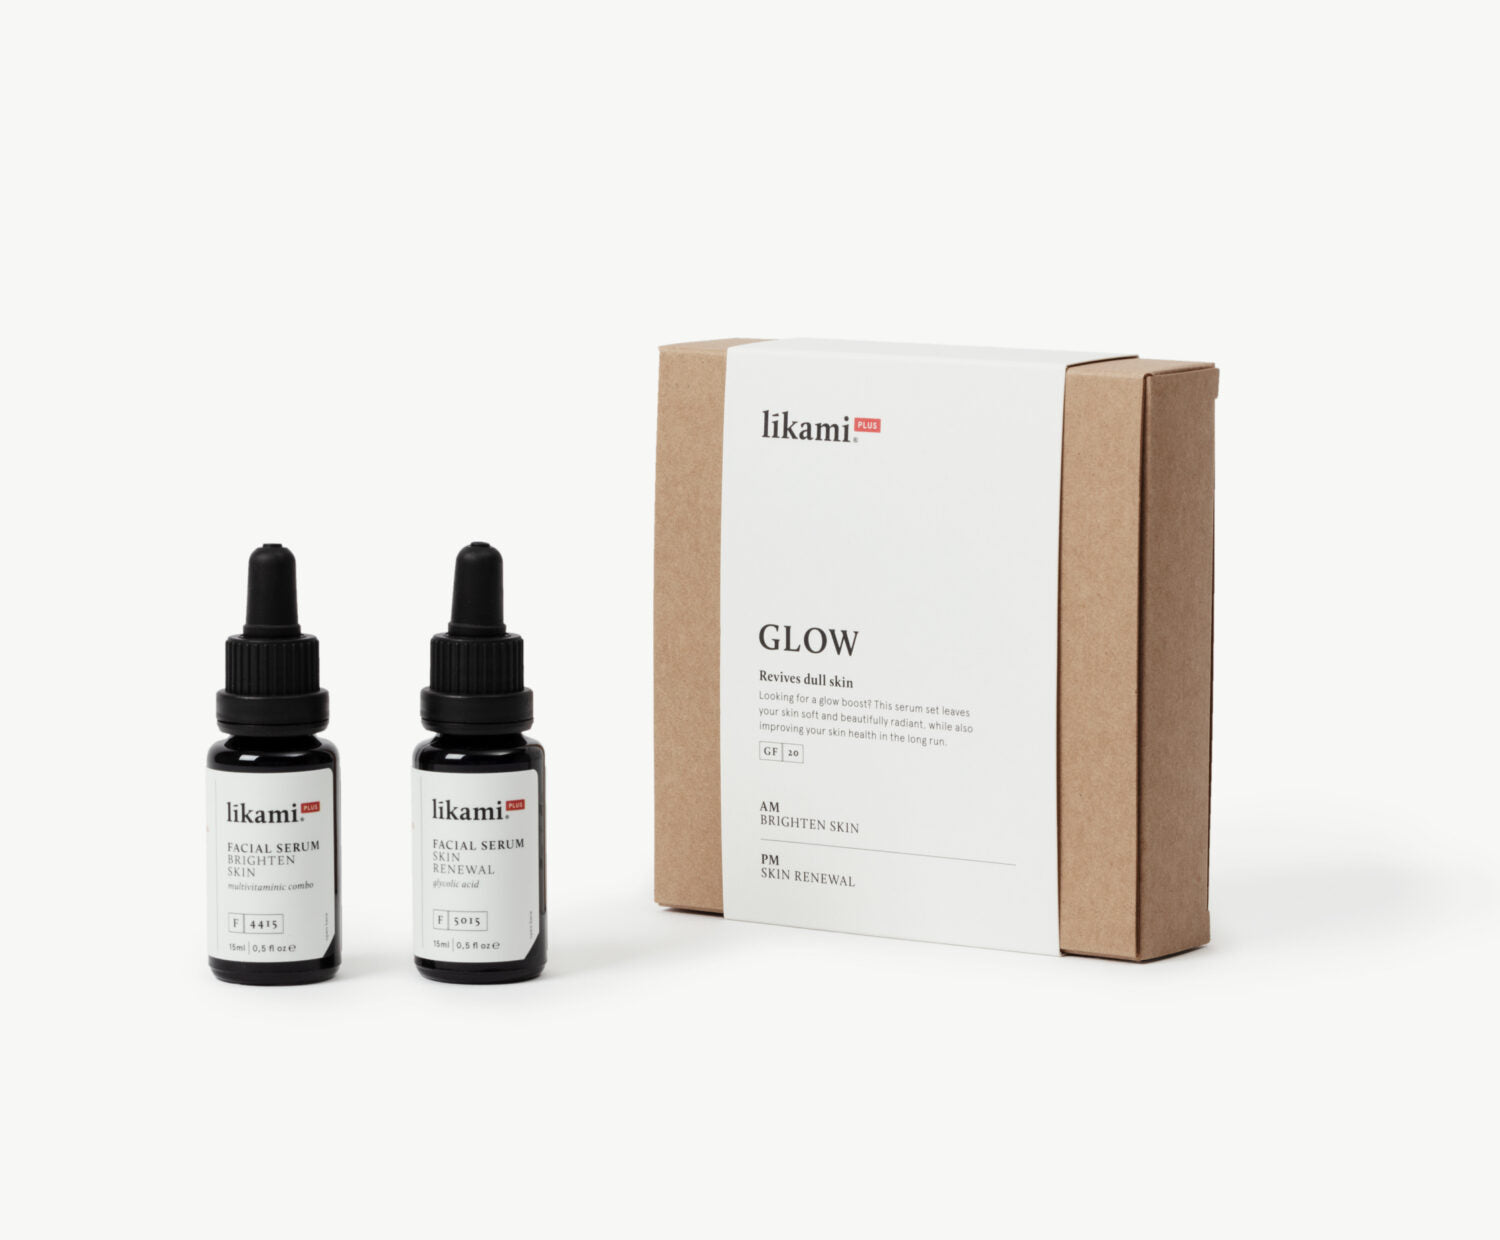 Likami plus - GLOW serum set // focus on reviving & glowing skin